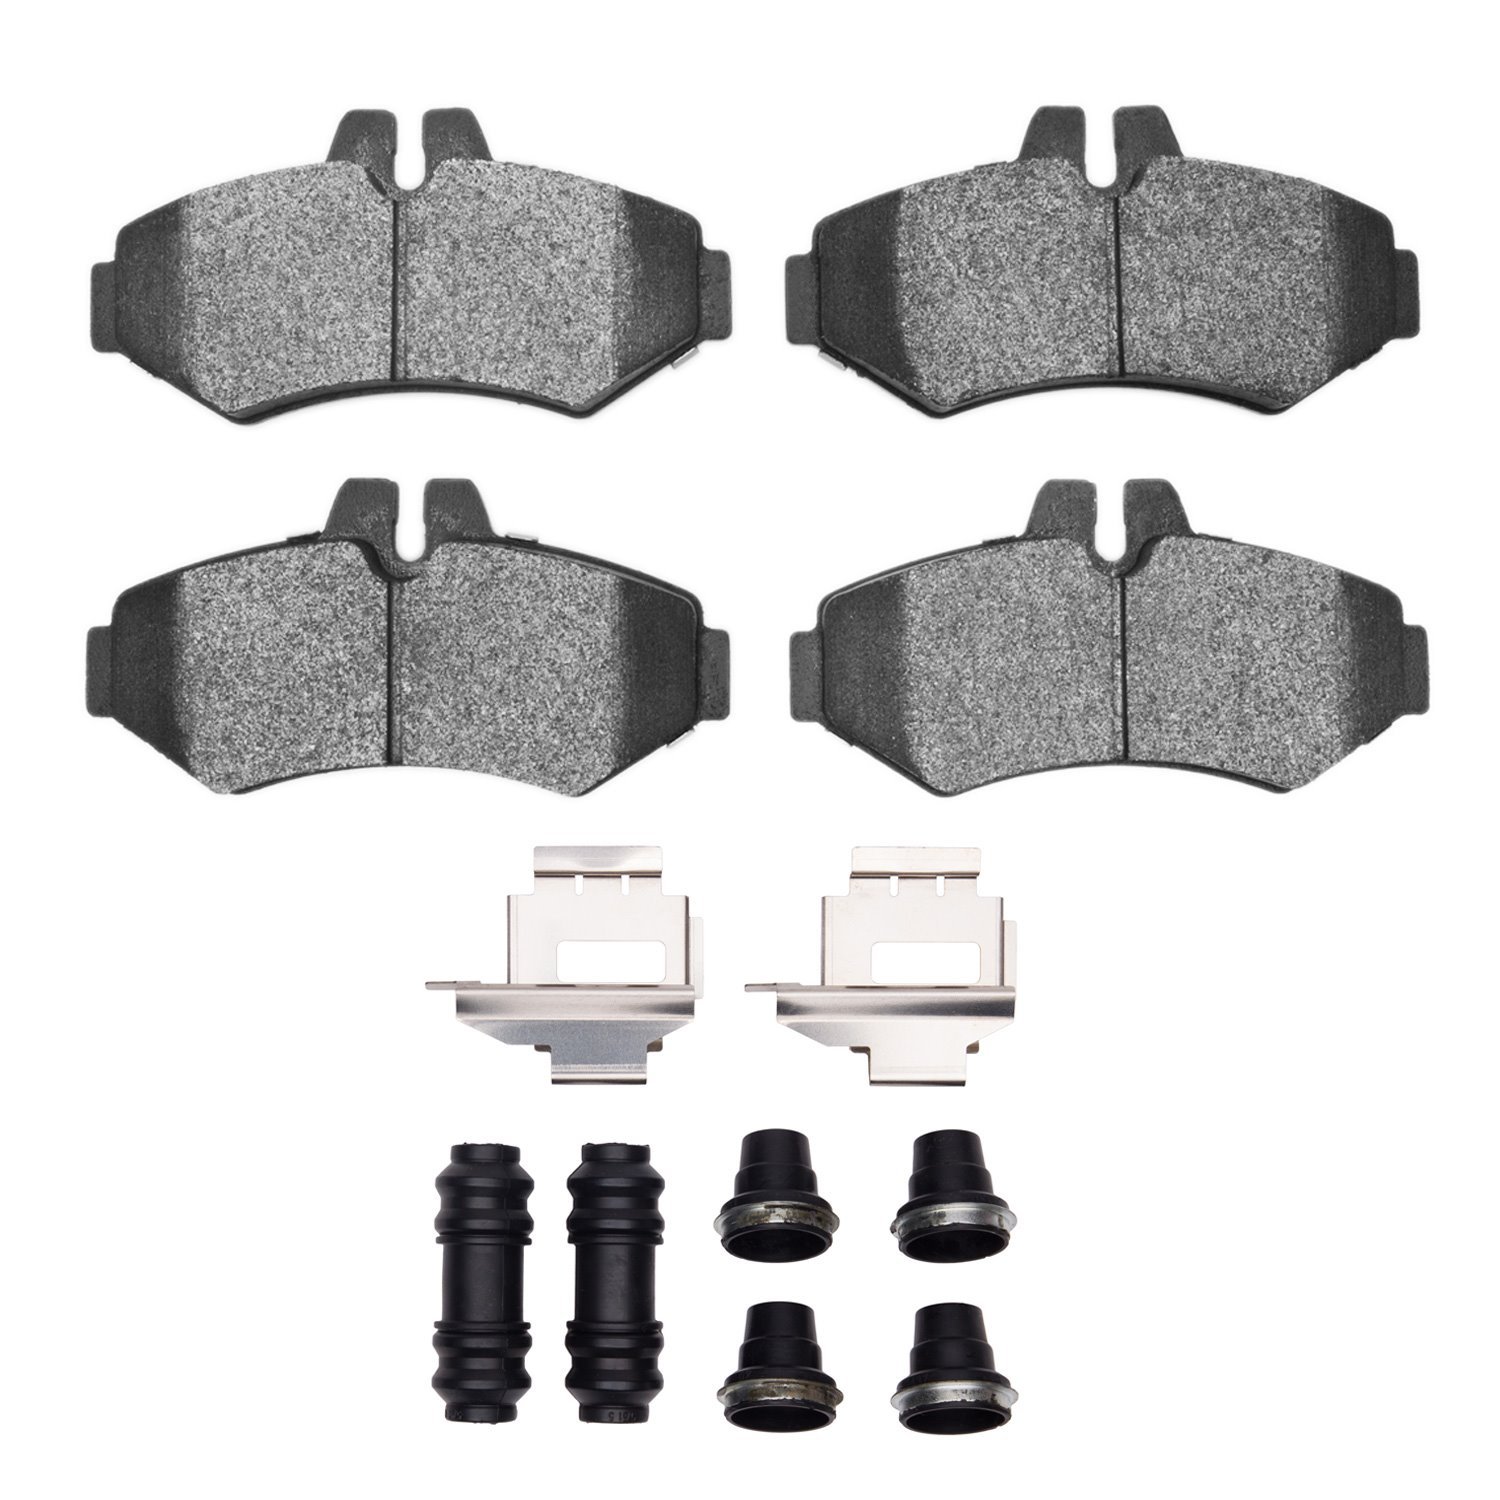 1214-0928-01 Heavy-Duty Brake Pads & Hardware Kit, 2002-2018 Multiple Makes/Models, Position: Rear,Rr